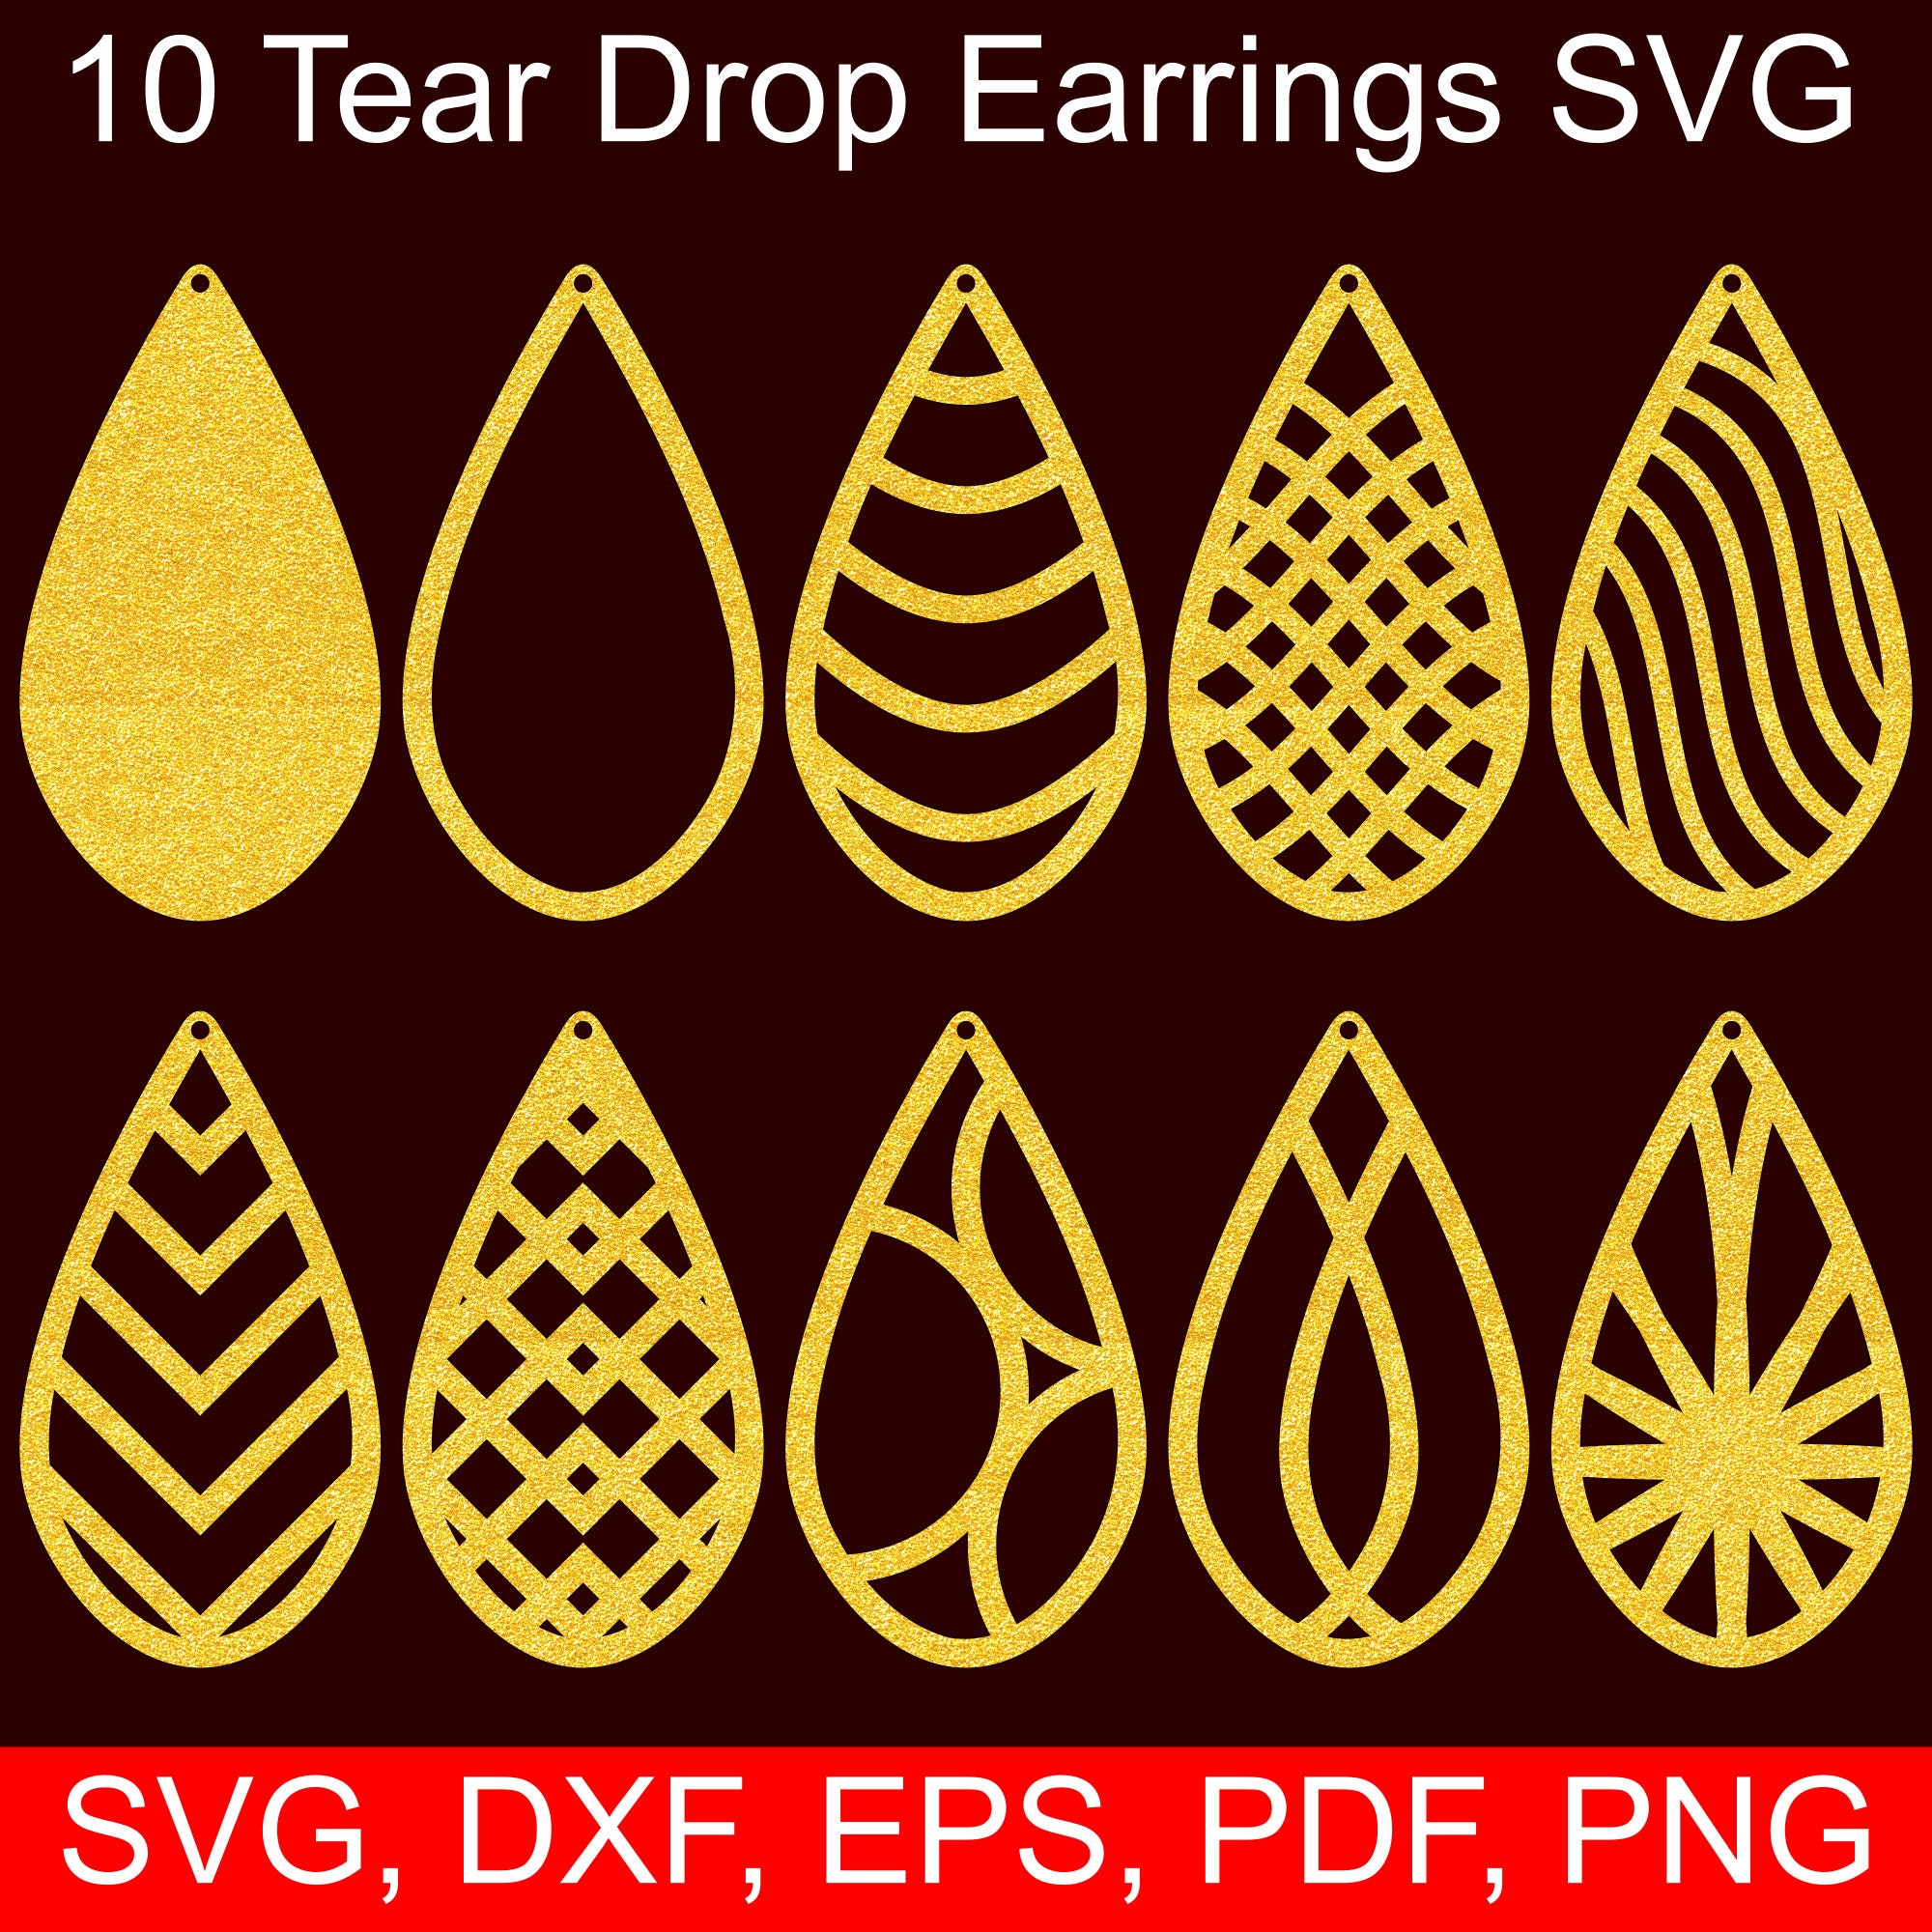 Free Svg Earring Digital Designs Svg File For Cricut : Earrings